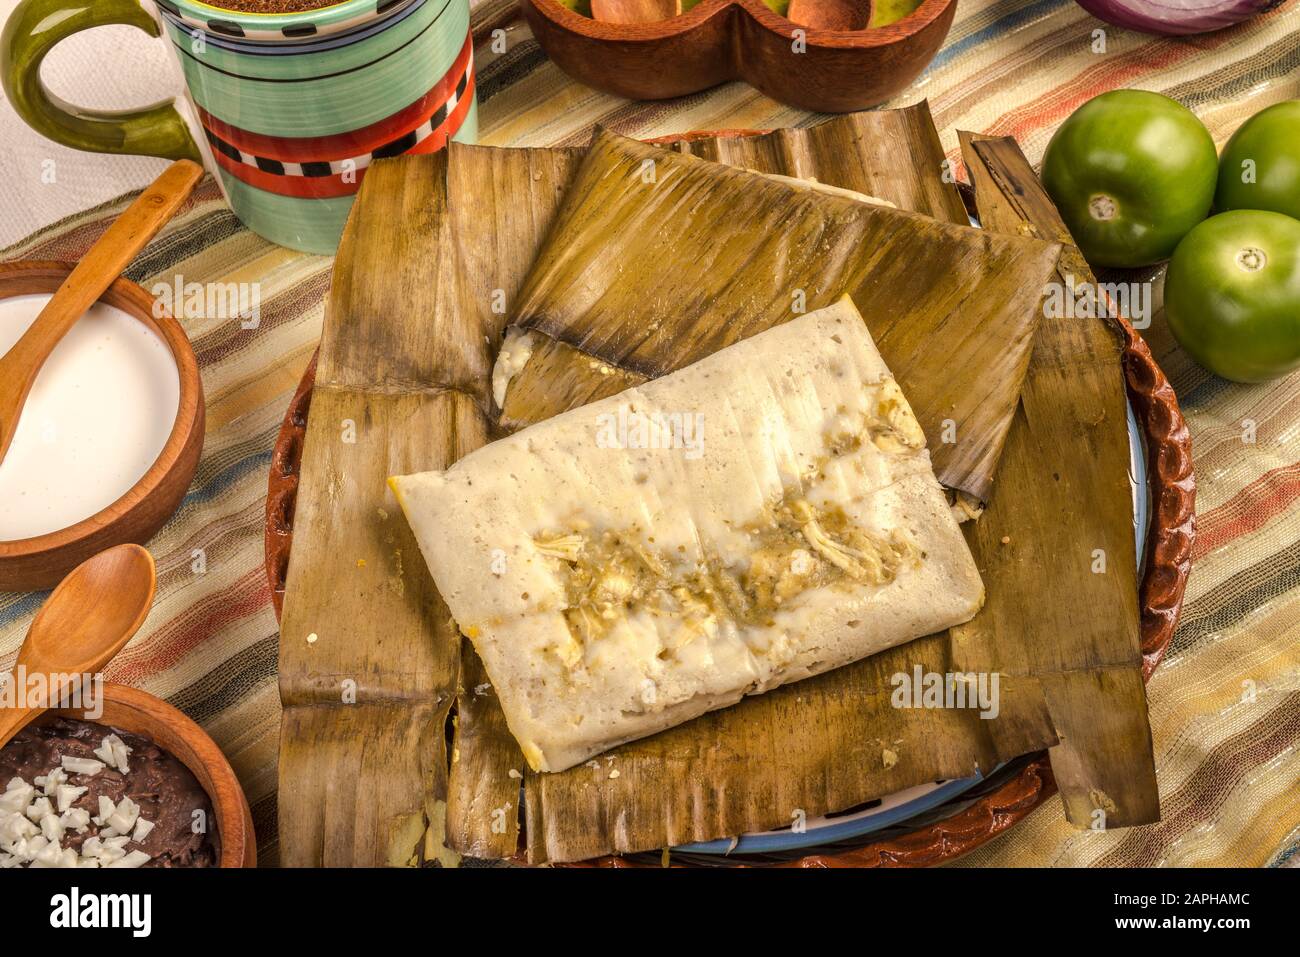 Tamales Oaxaqueños, plat mexicain fabriqué avec de la pâte de maïs, du poulet ou du porc et du piment, enveloppé dans des feuilles de banane. Banque D'Images